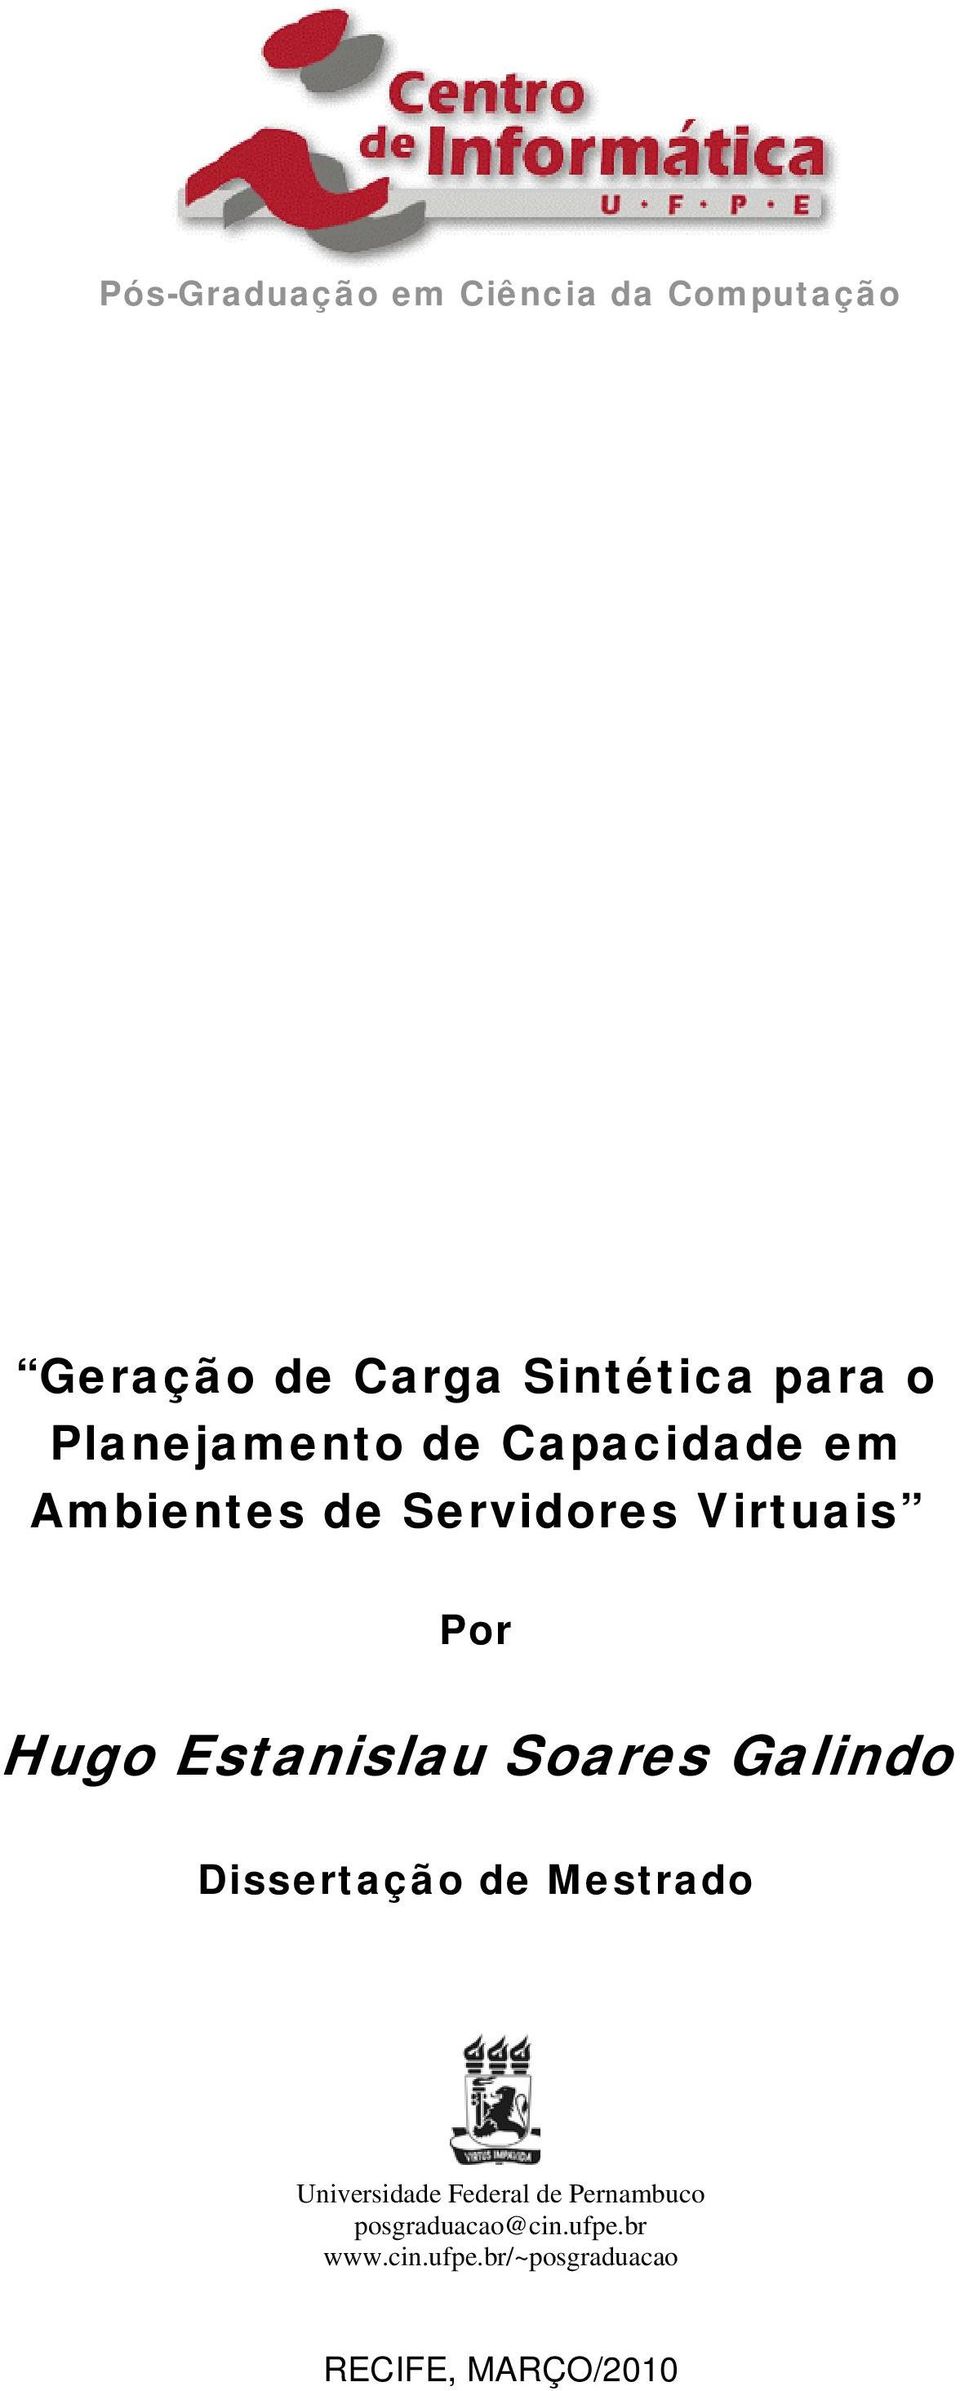 Estanislau Soares Galindo Dissertação de Mestrado Universidade Federal de